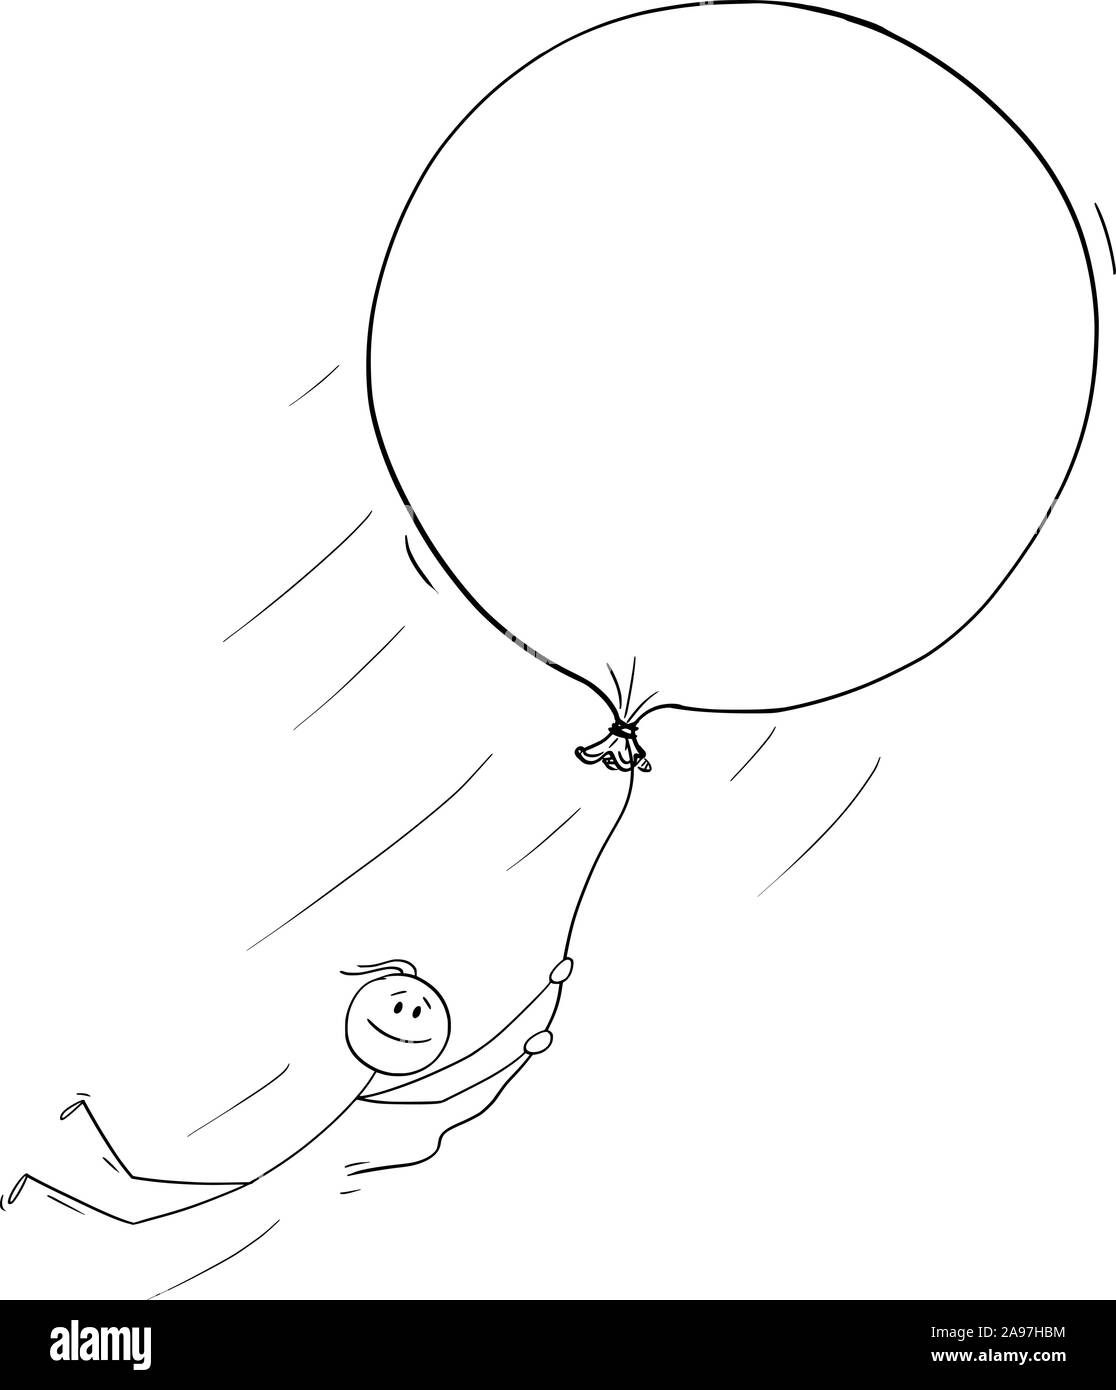 Vektor cartoon Strichmännchen Zeichnen konzeptionelle Darstellung der Mann oder Geschäftsmann holding Ballon und fliegen frei. Konzept der Träume, Kreativität und Freiheit. Stock Vektor